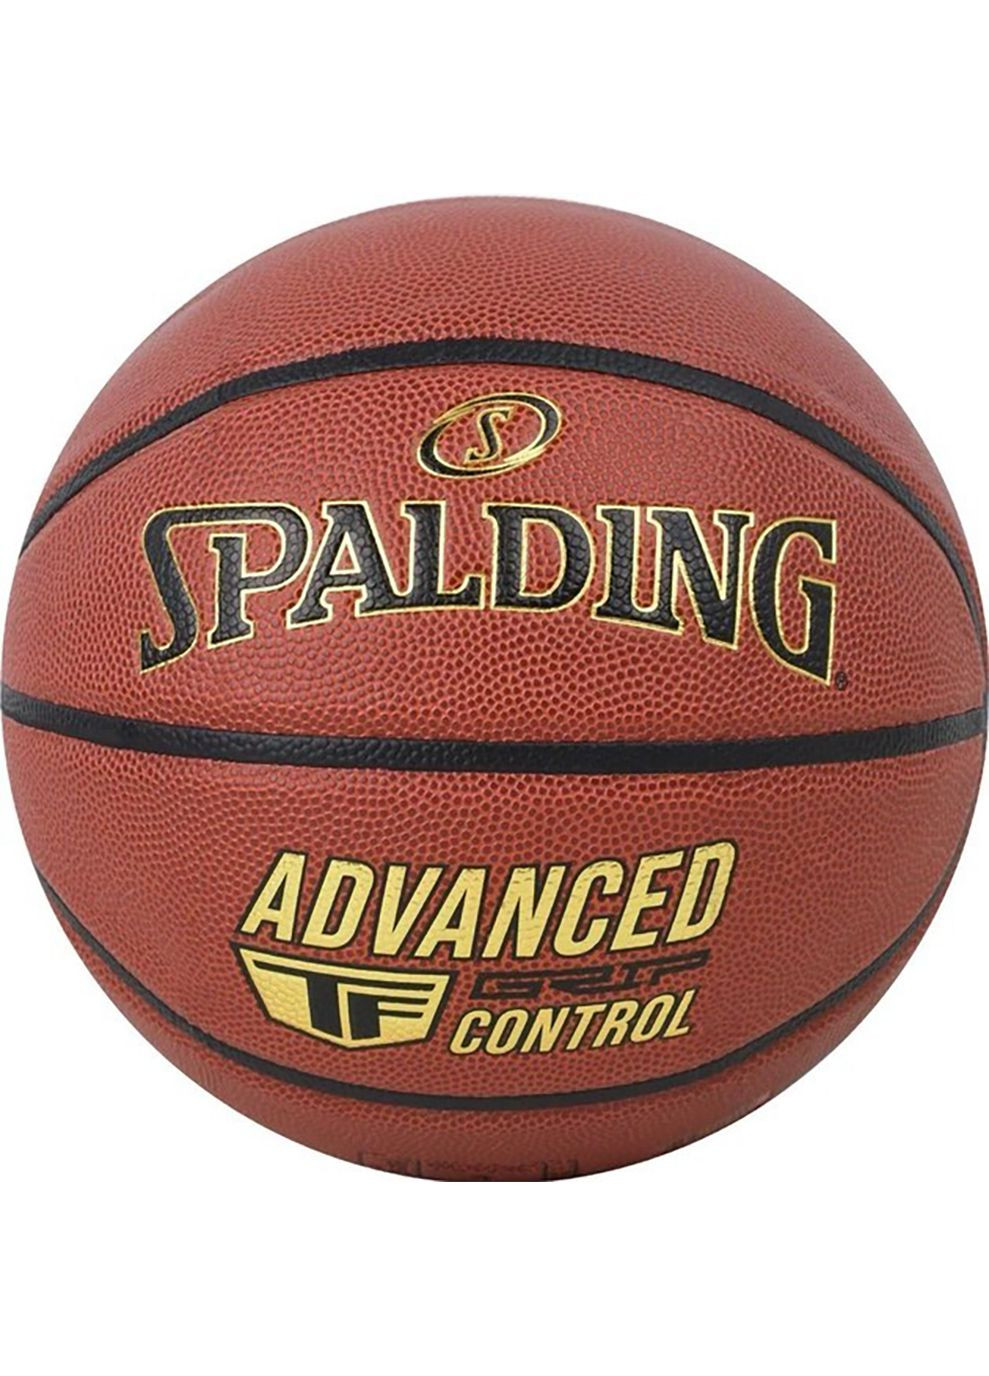 М'яч баскетбольний Advanced Grip Control помаранчевий Уні 7 Spalding (268832235)